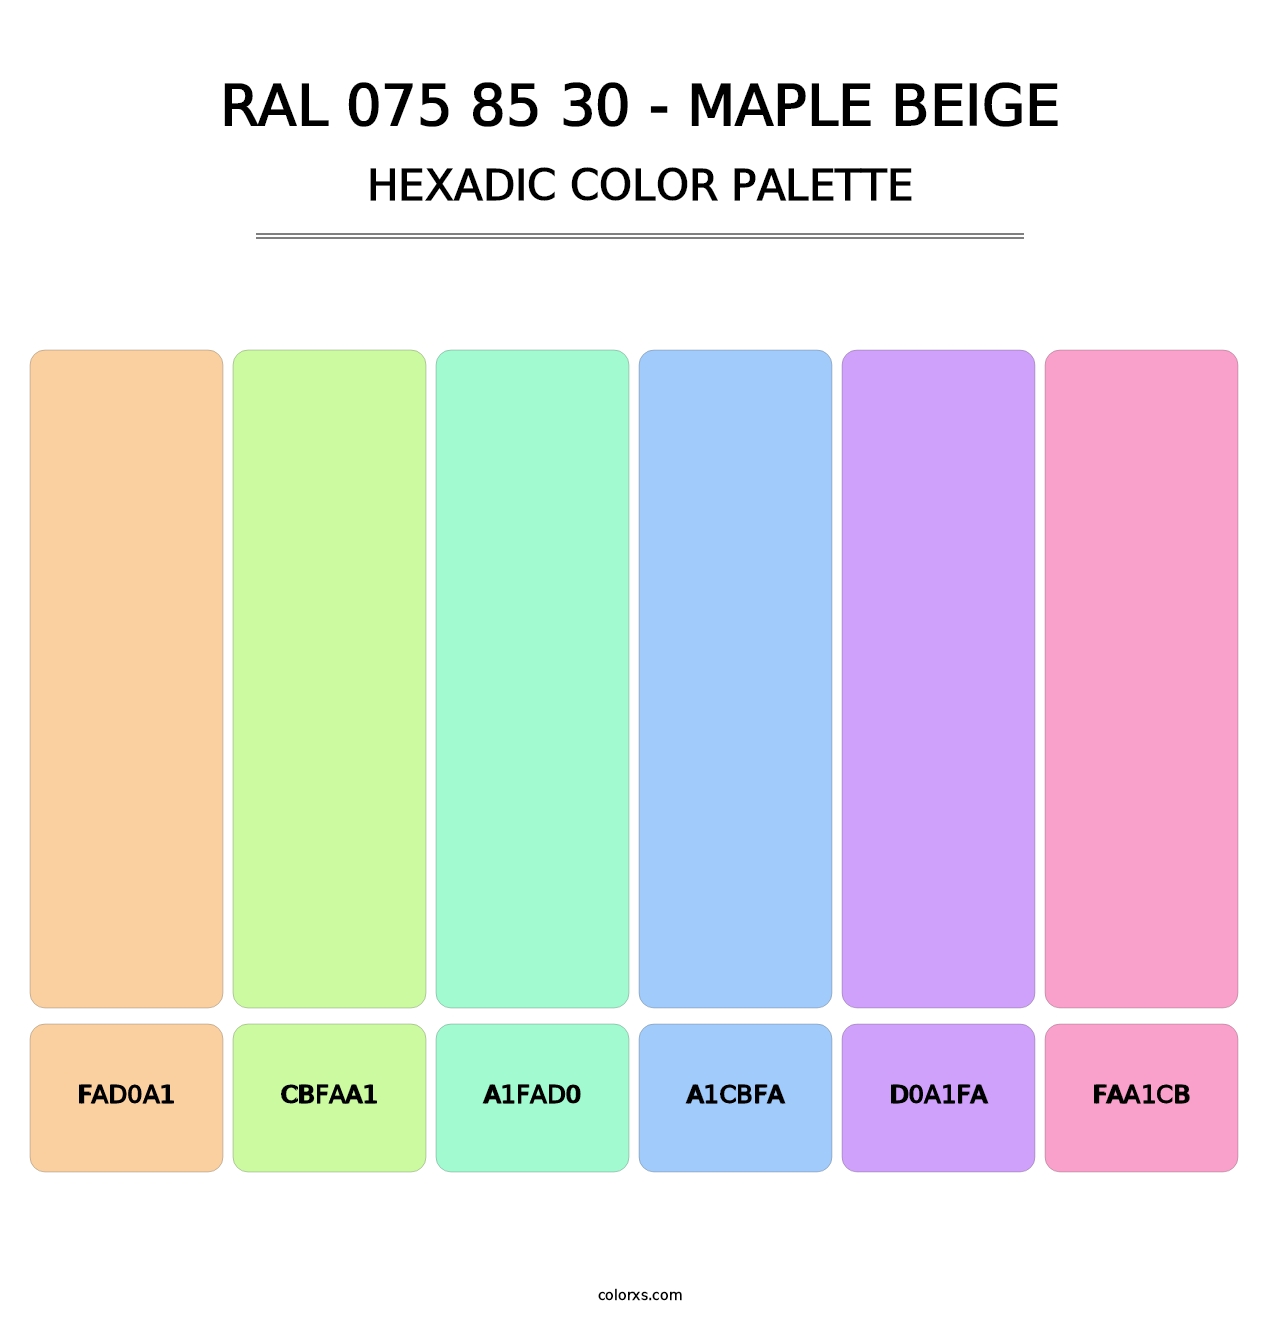 RAL 075 85 30 - Maple Beige - Hexadic Color Palette